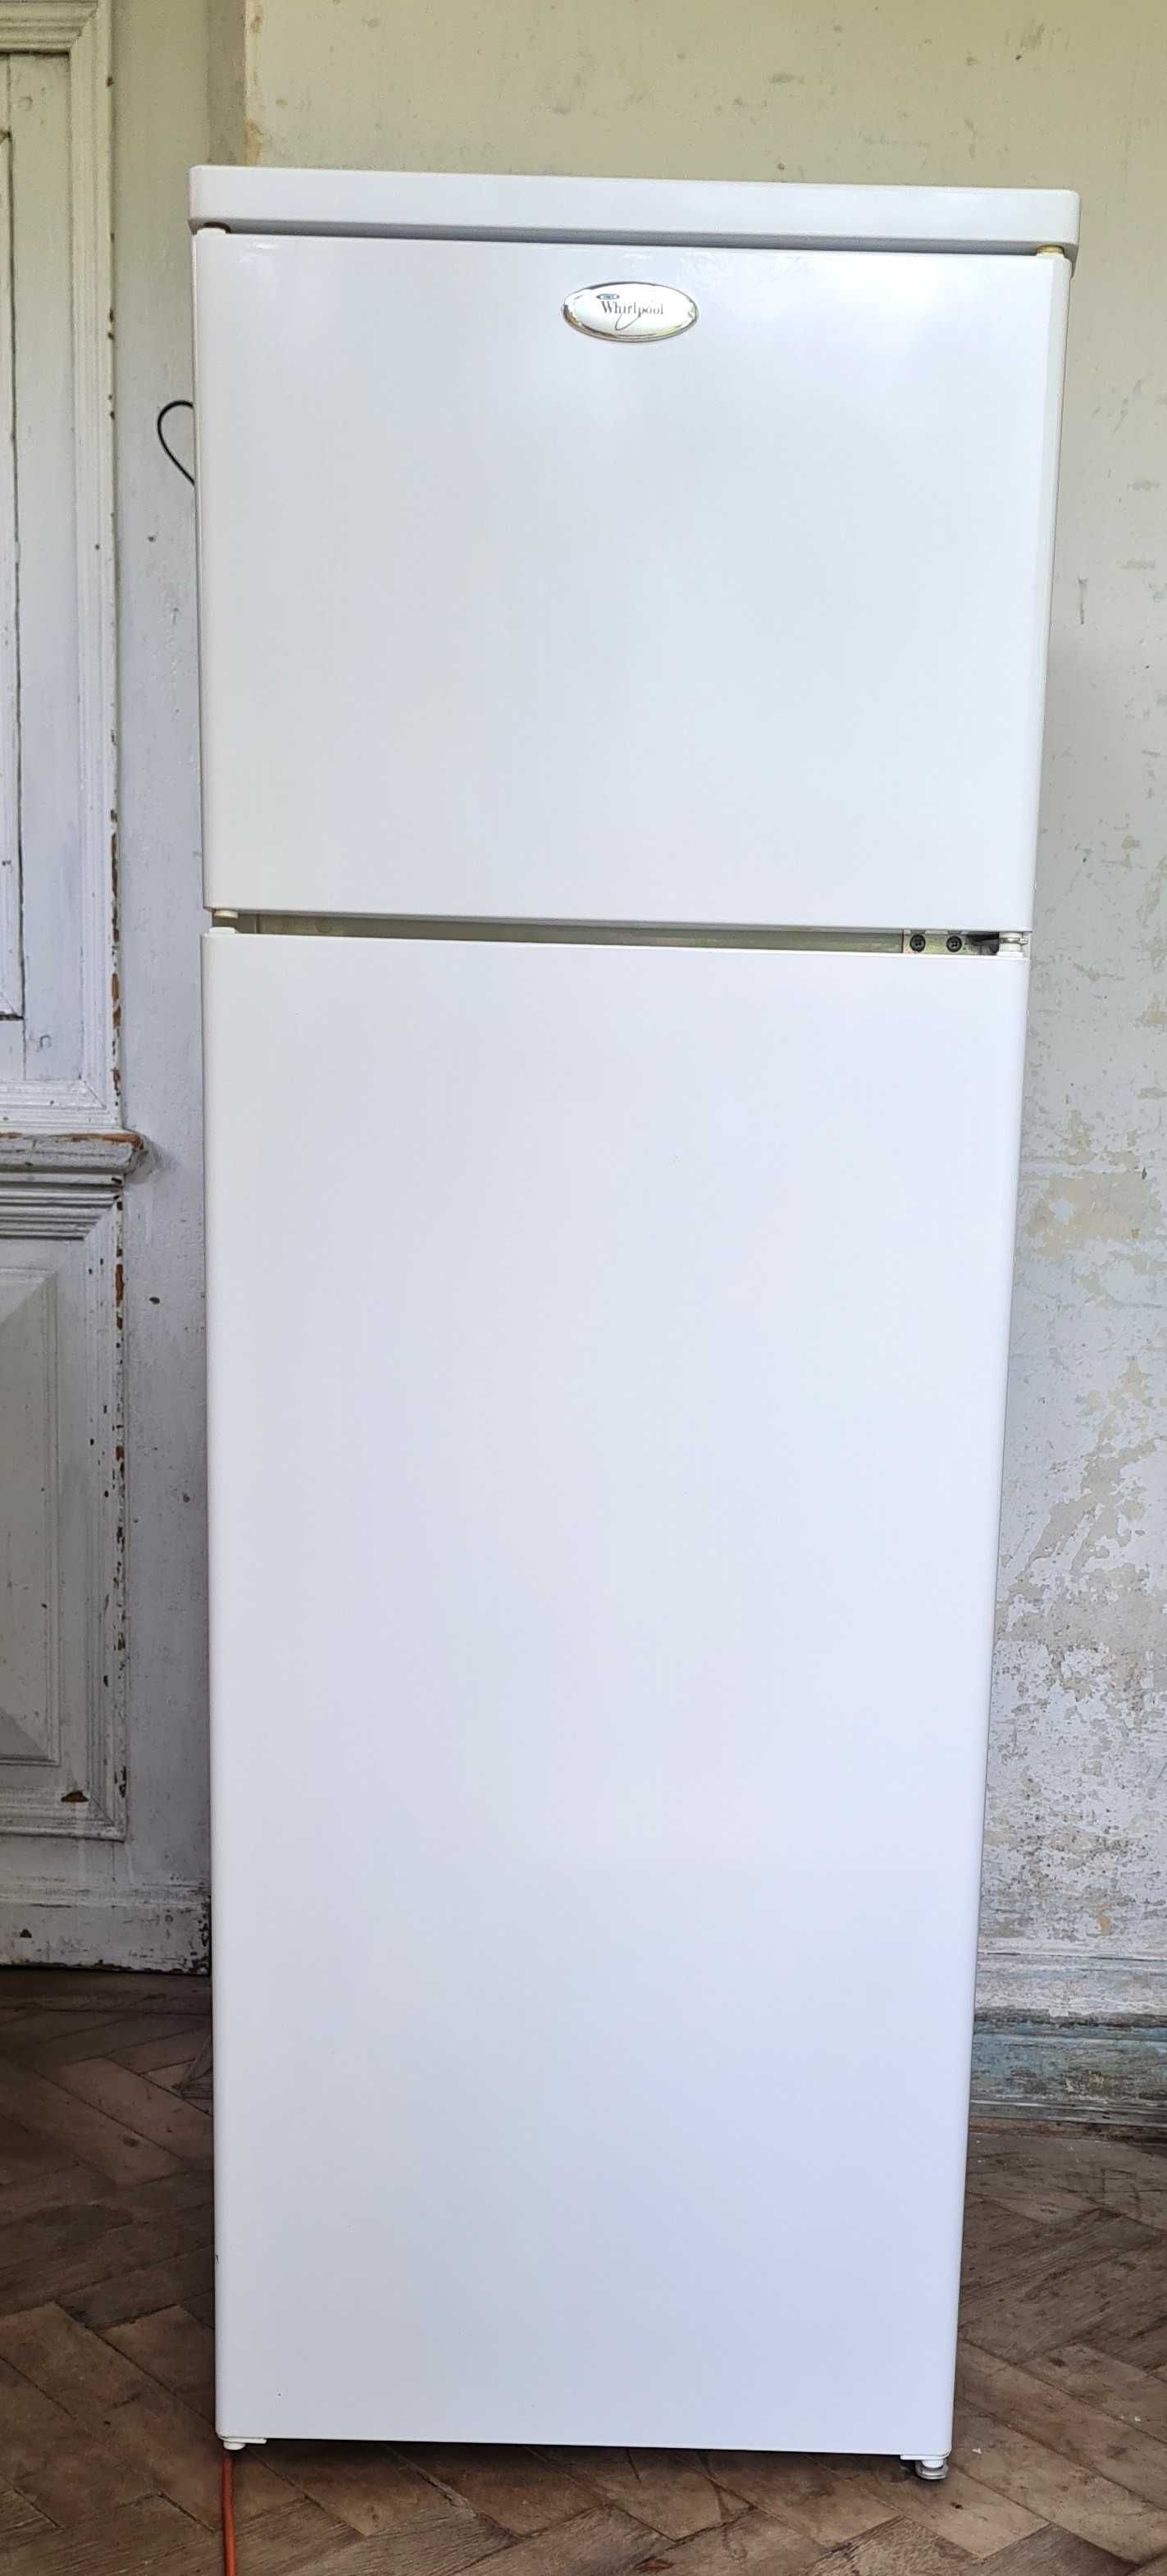 Холодильник Whirlpool б/в в гарному робочому стані